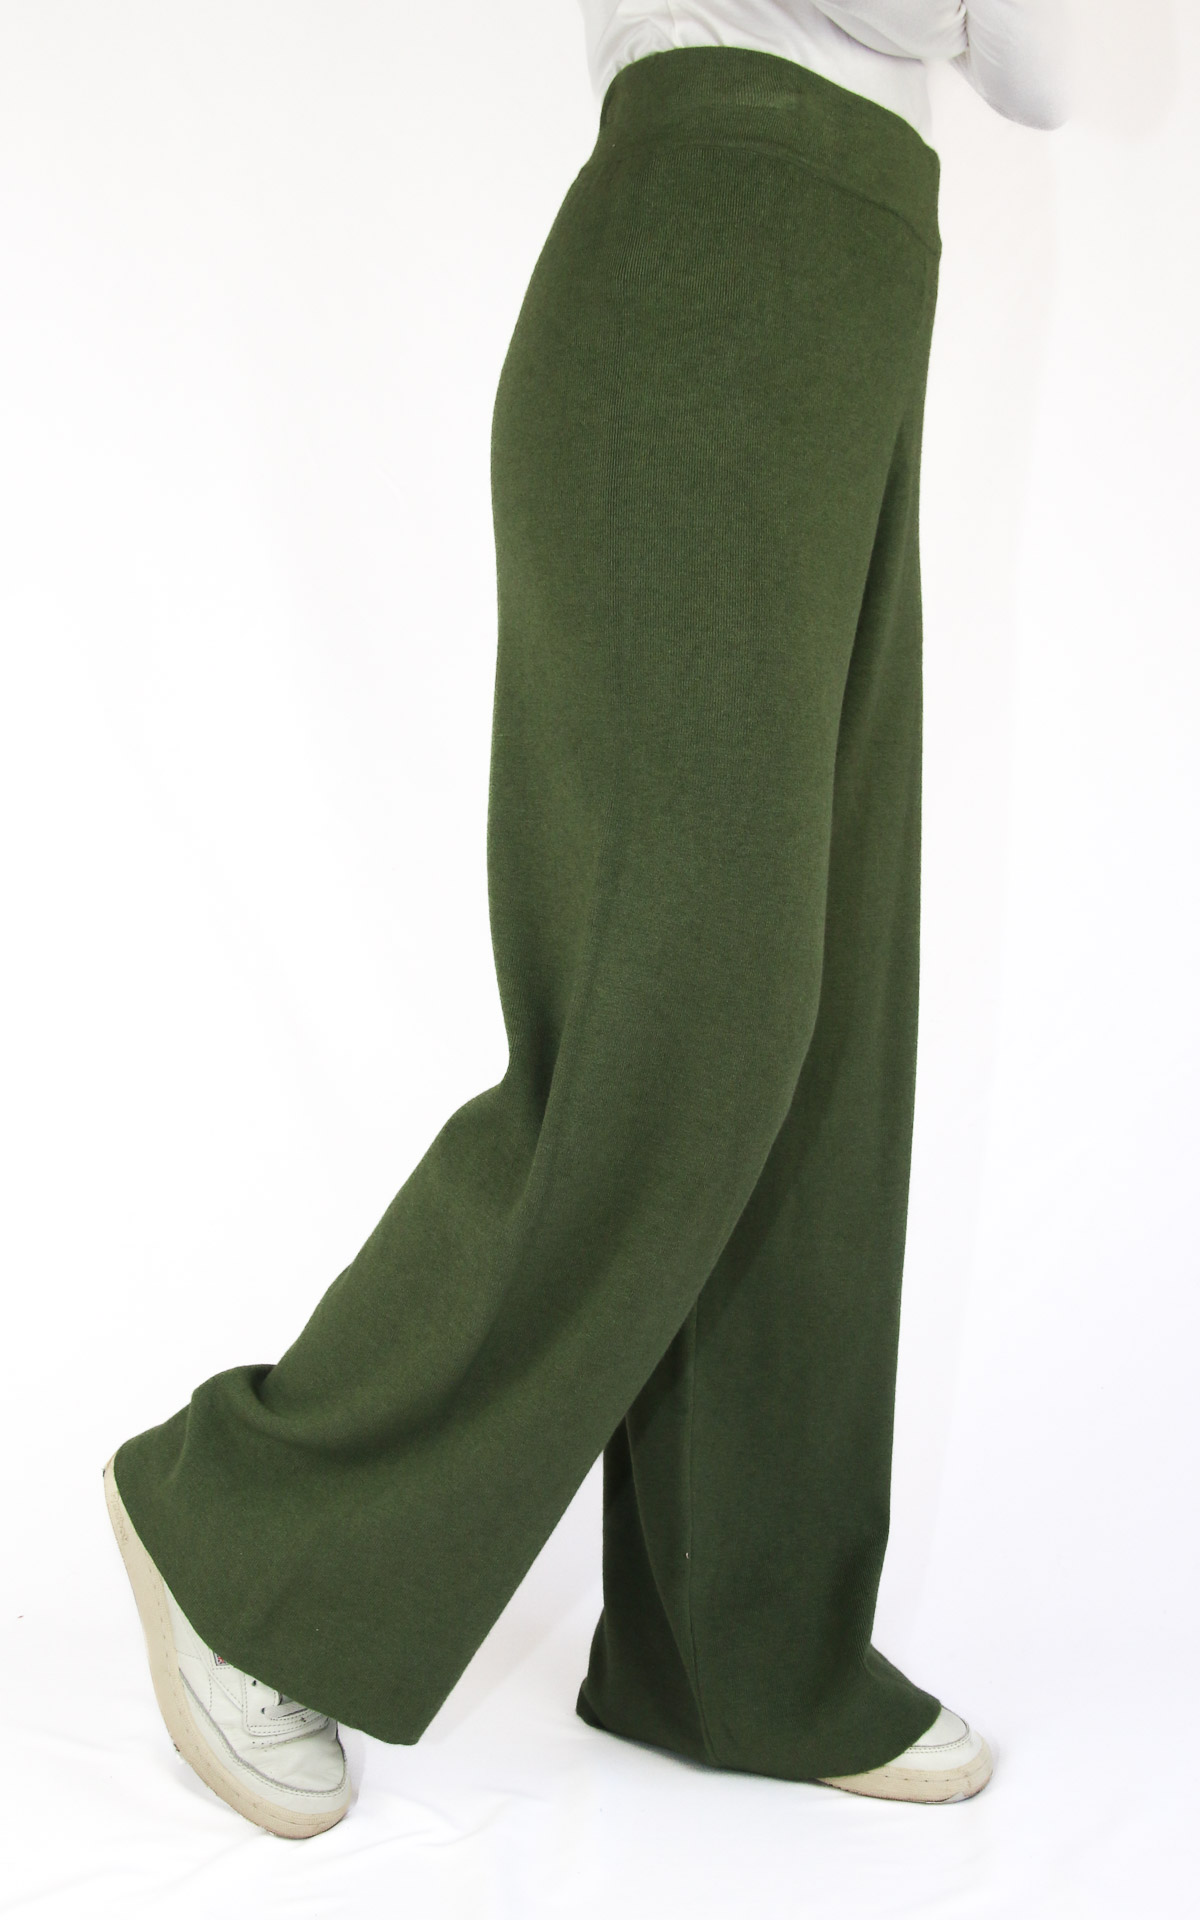 Initial - pantalone zampa - verde militare